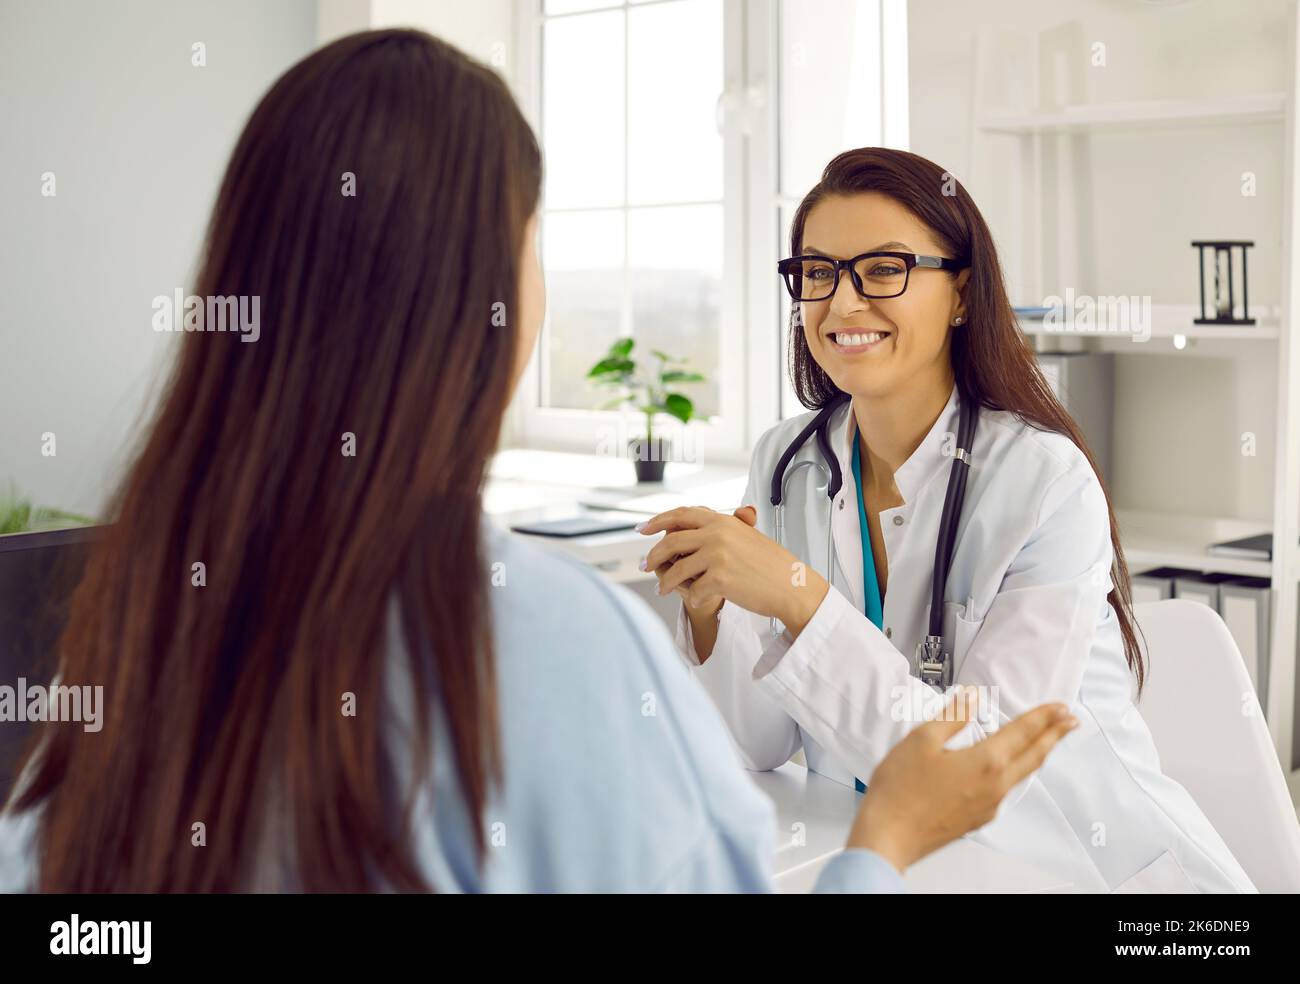 Medico felice sorridendo mentre ascolta il paziente durante la consultazione medica in clinica Foto Stock